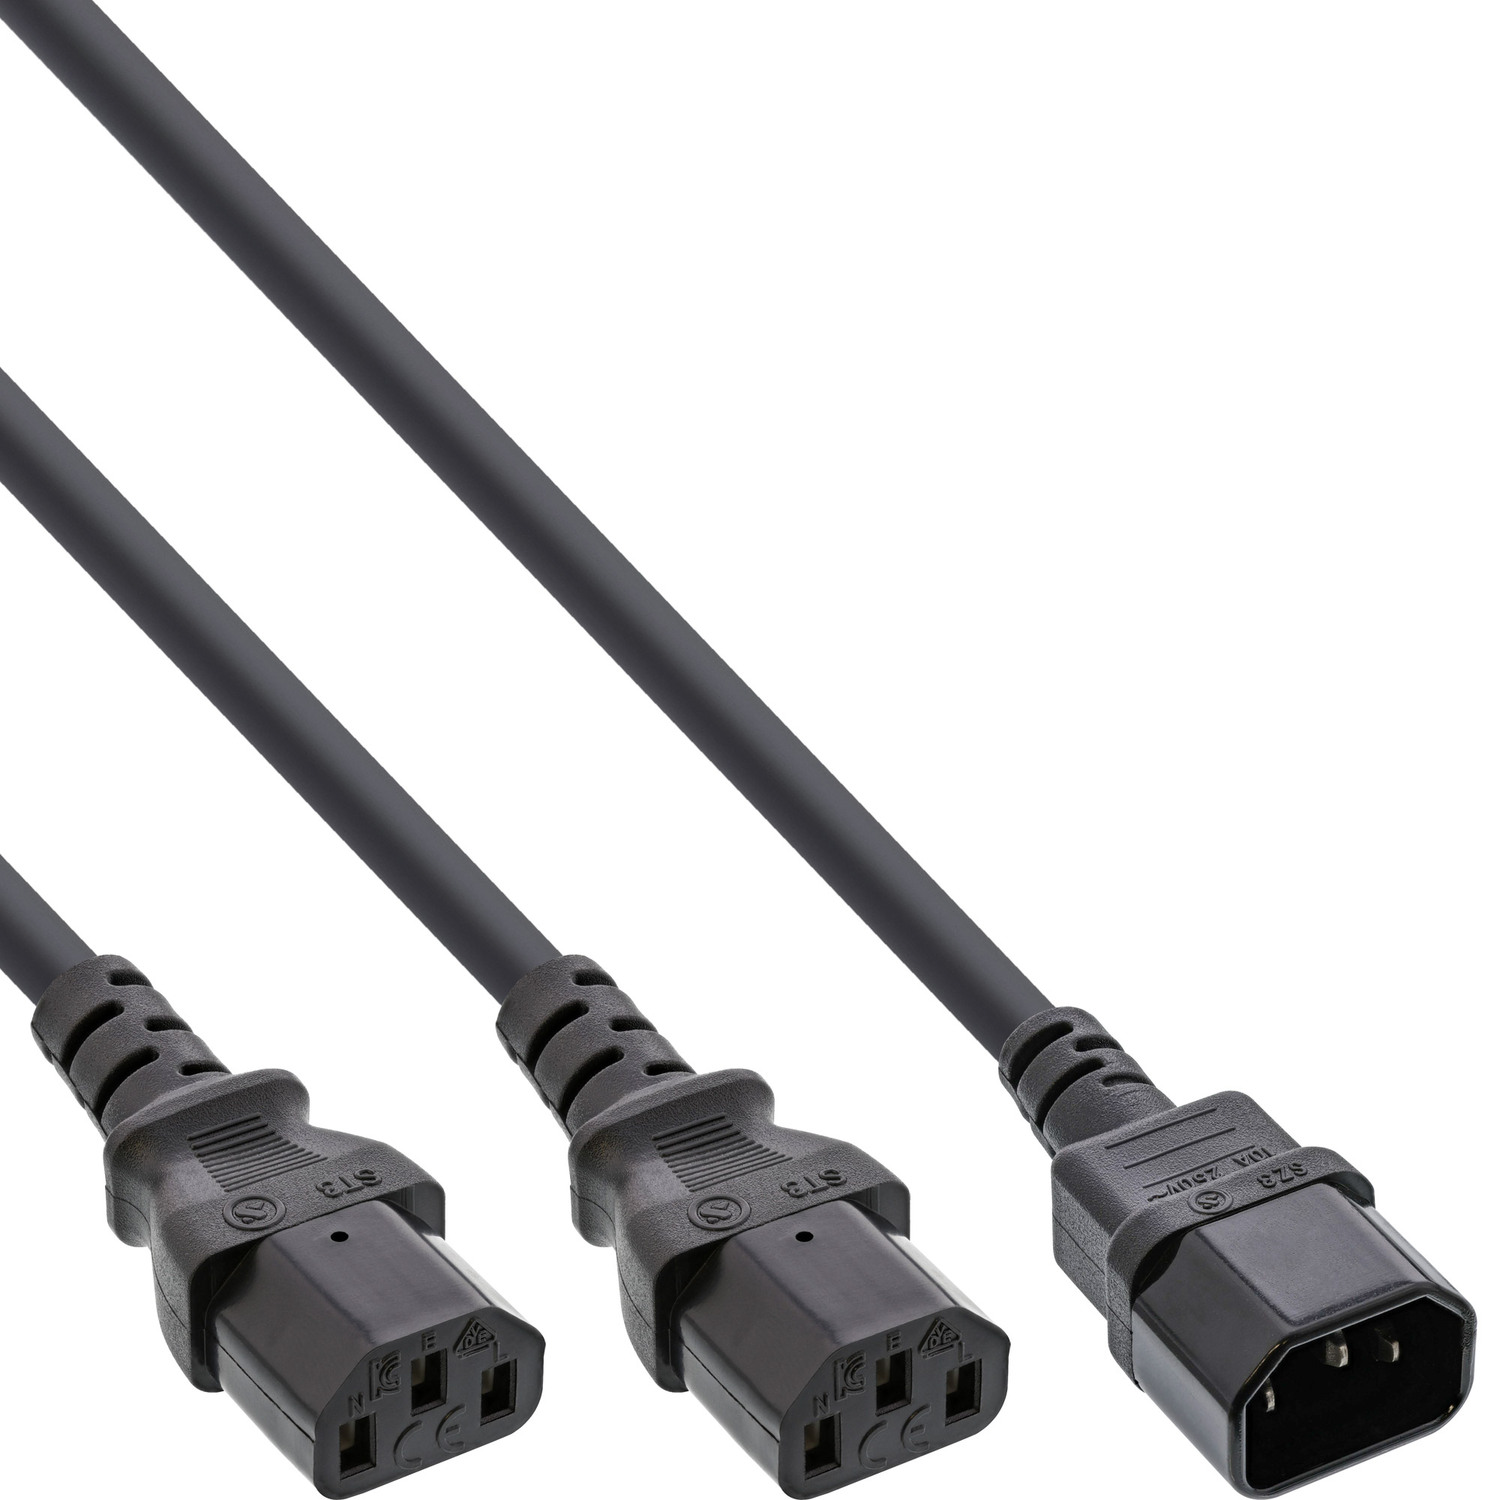 1,8m IEC-C13, 2x Kaltgeräte, auf InLine® Stromkabel 1x Netz-Y-Kabel, INLINE extern IEC-C14